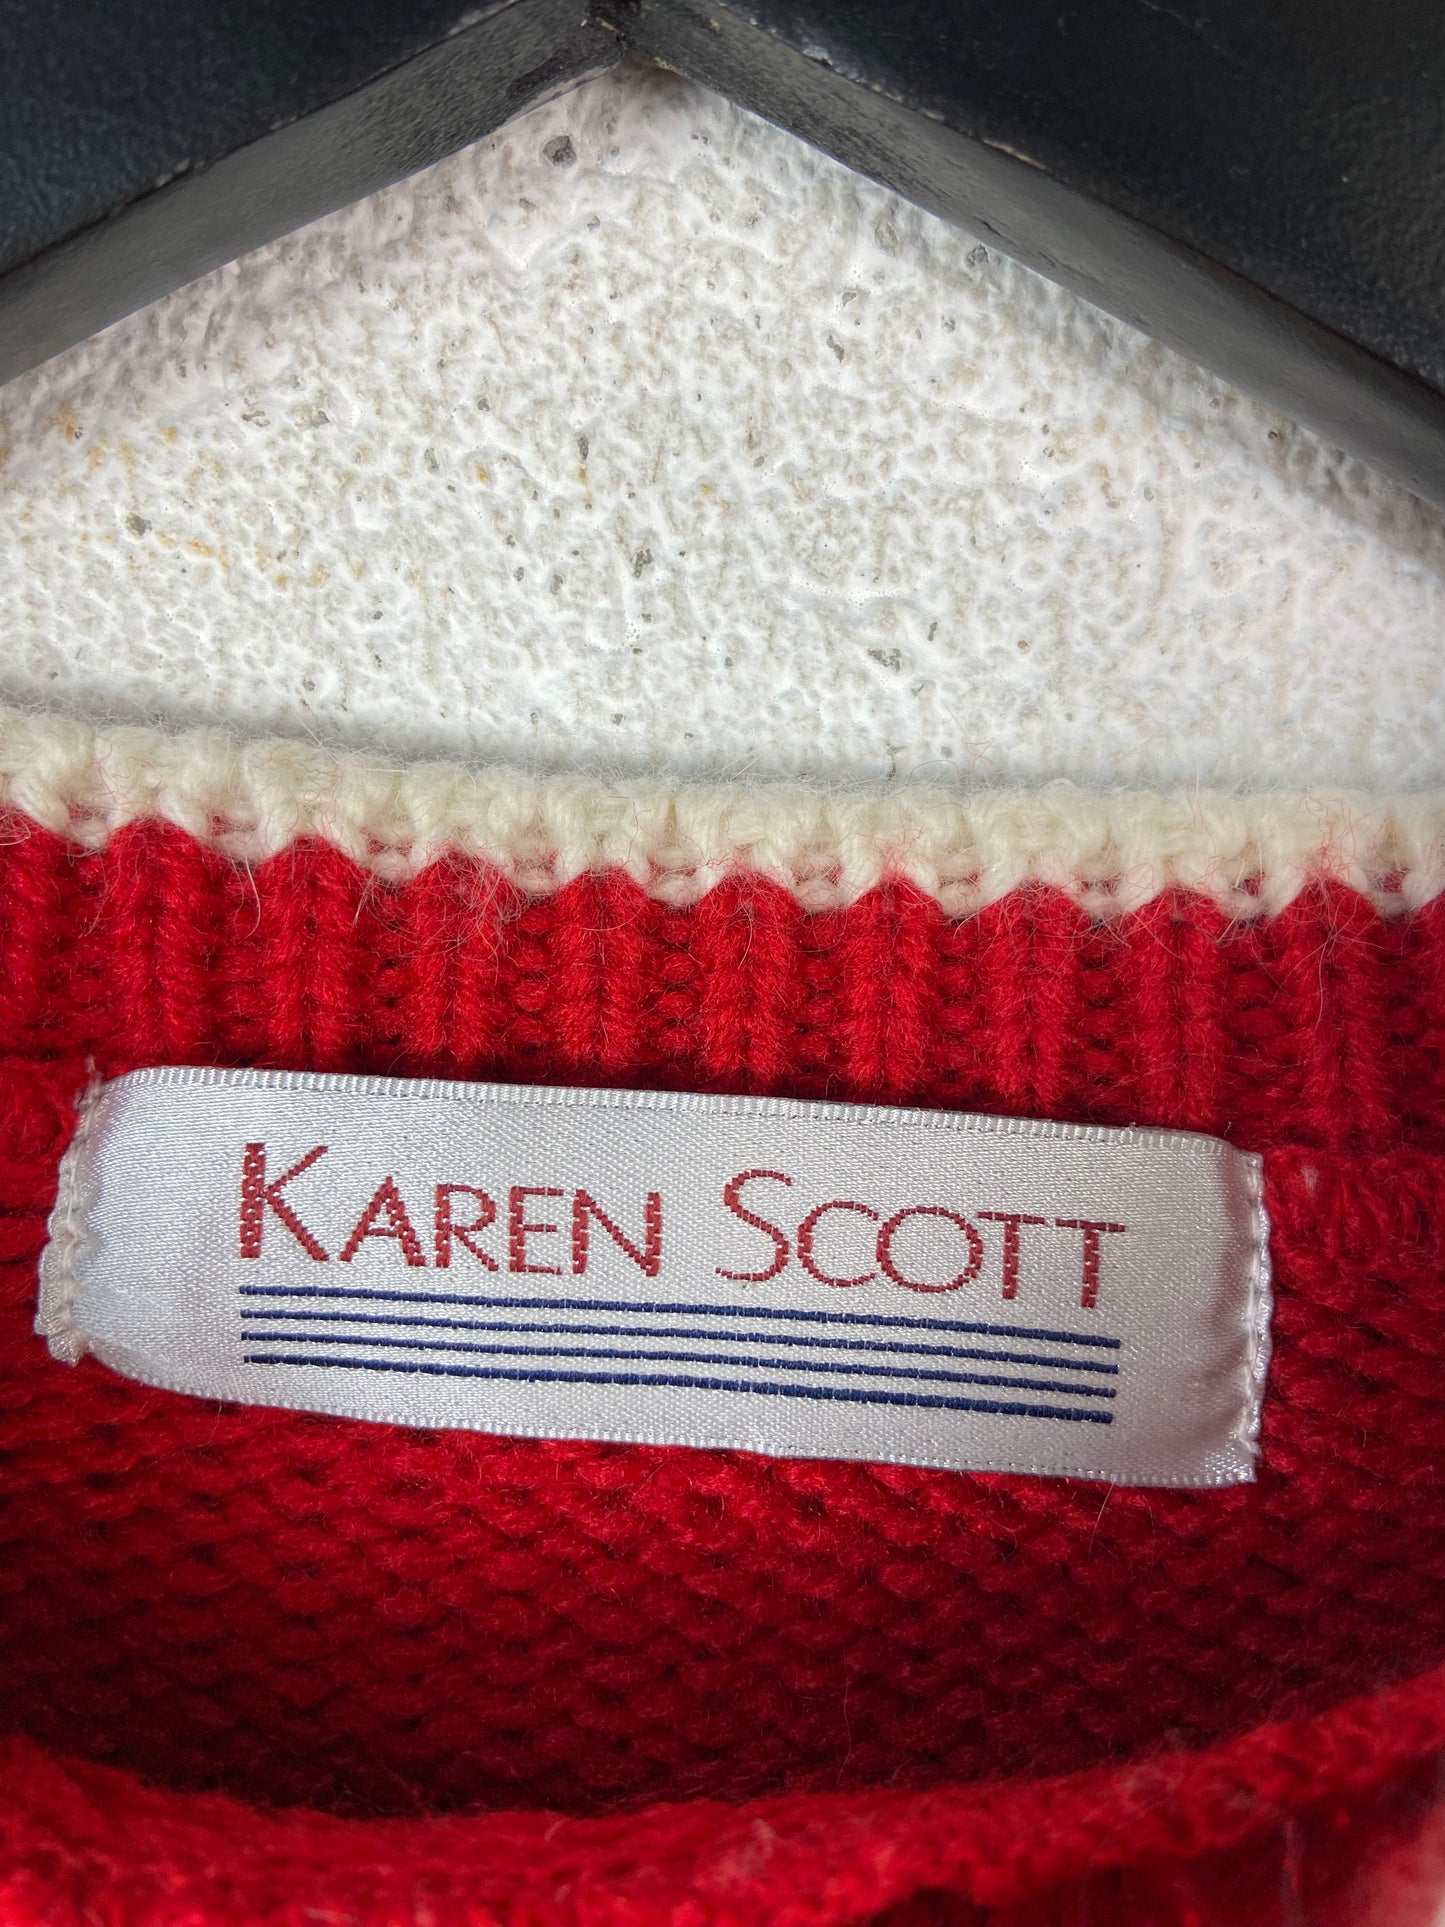 VTG Karen Scott Christmas Bunny Red Sweater Sz M